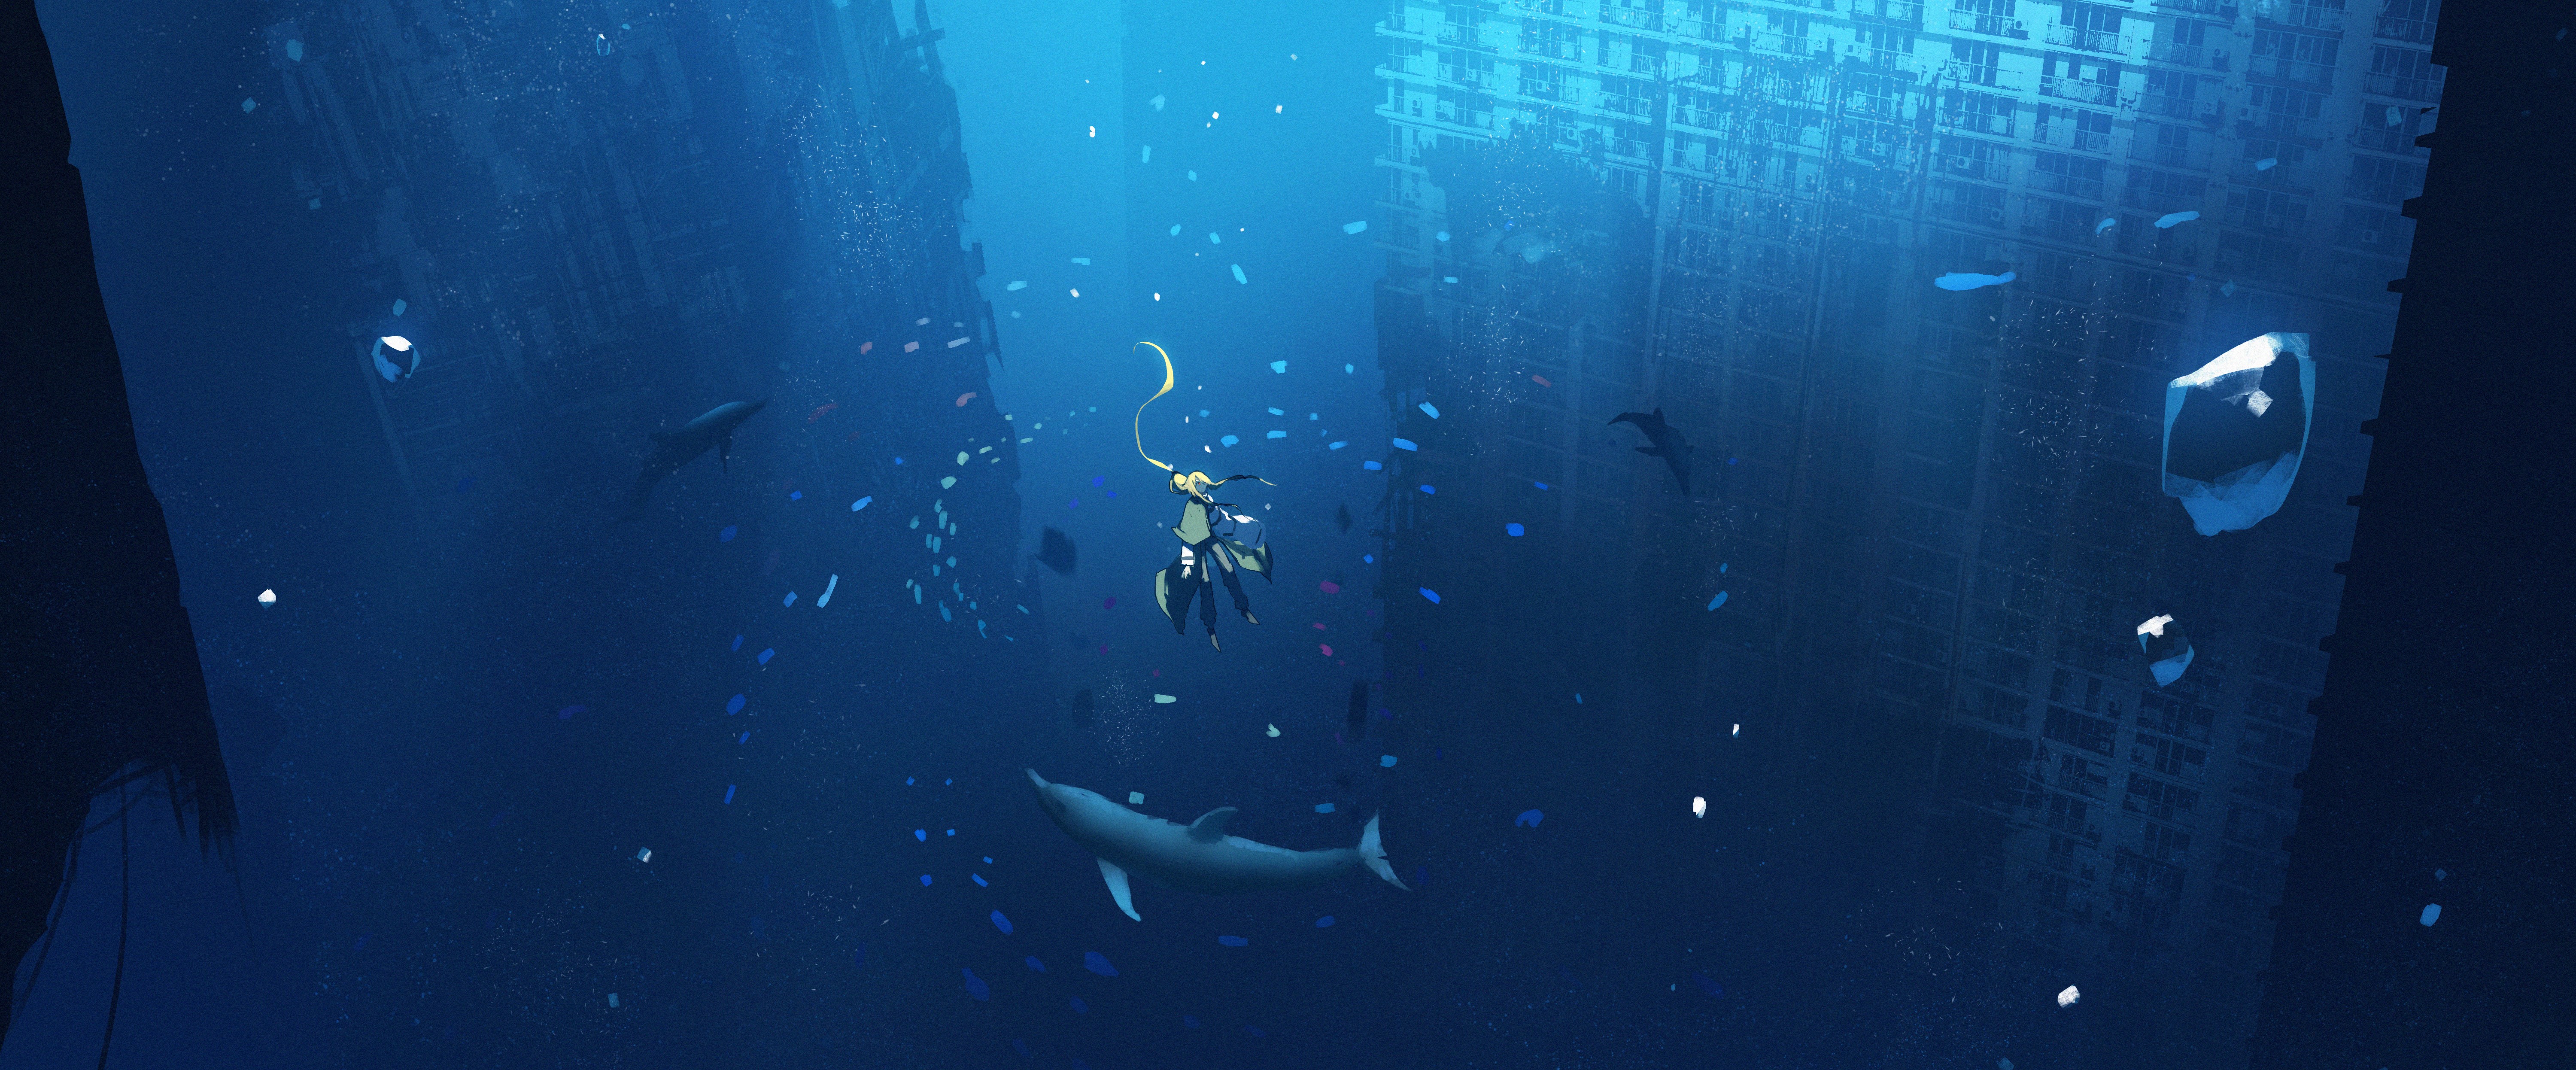 Hình nền anime dưới nước sẽ đưa bạn vào một thế giới tuyệt đẹp, nơi bạn sẽ đắm chìm trong sự bình yên và yên tĩnh. Hãy tải về ảnh này để mang lại cho màn hình điện thoại của bạn một vẻ đẹp đầy mê hoặc.